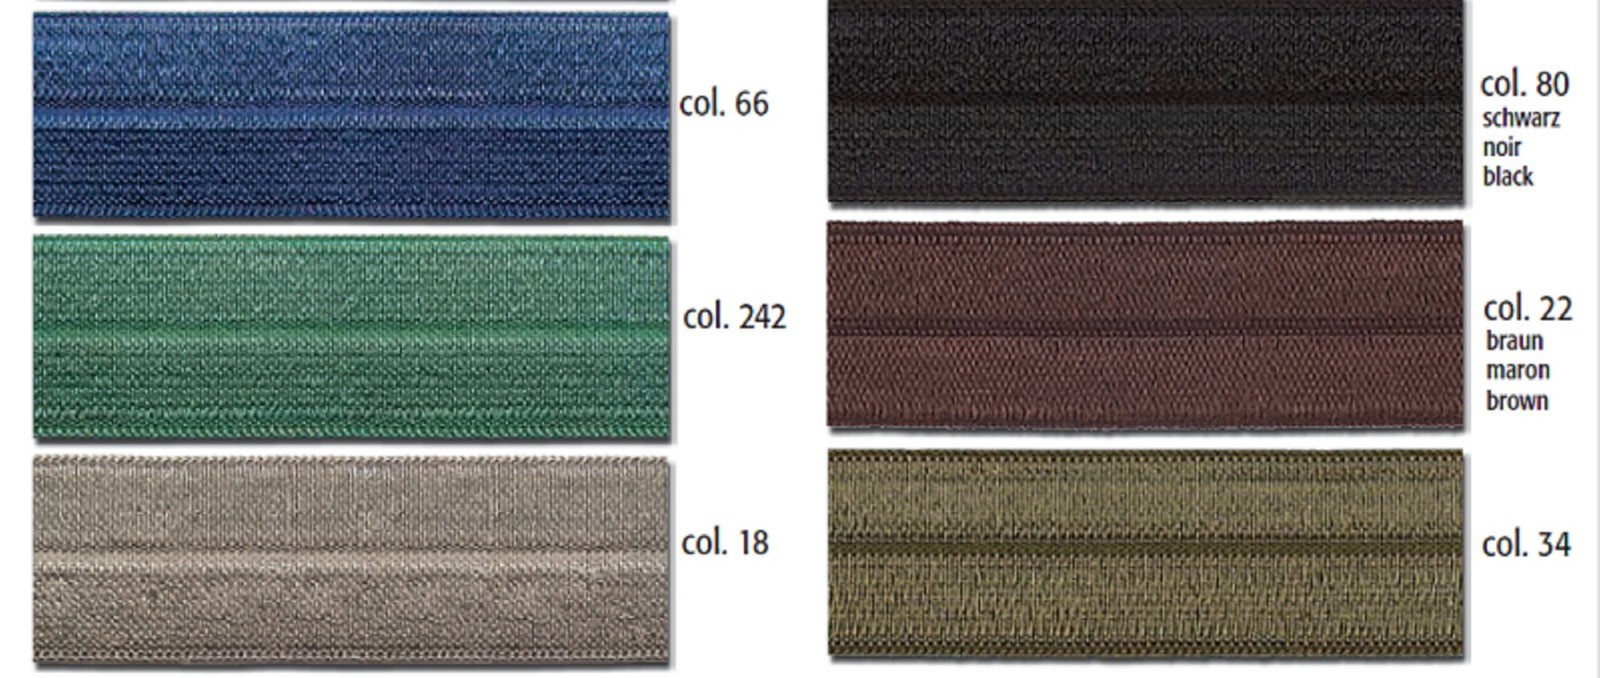 Gummiband für Unterwäsche | Einfaßband elastisch | 20 mm breit | verschiedene Farben 3